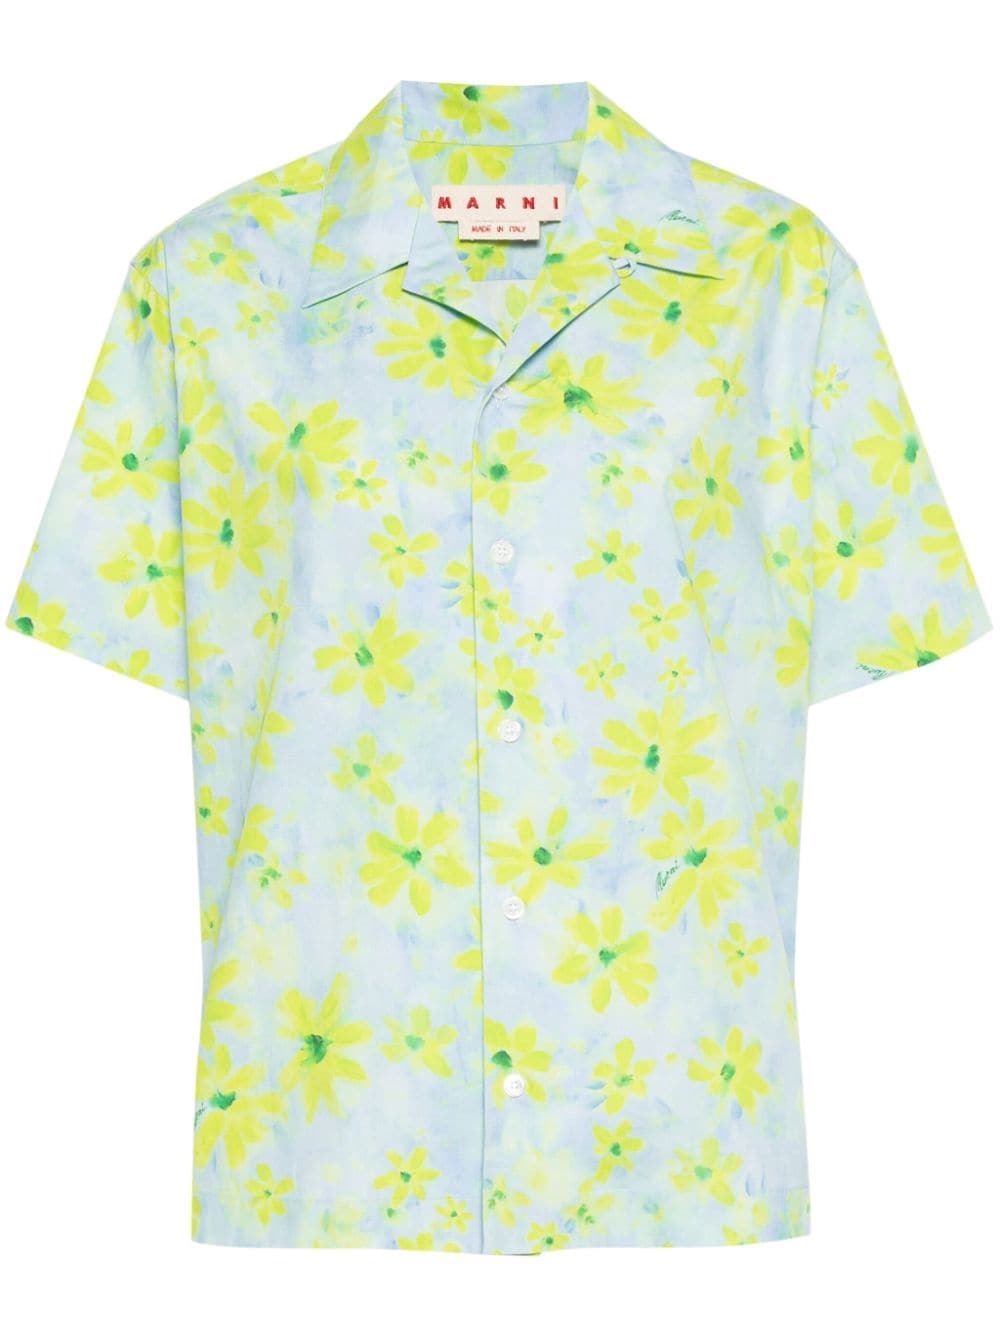 Marni floral-print shirt - Blue von Marni